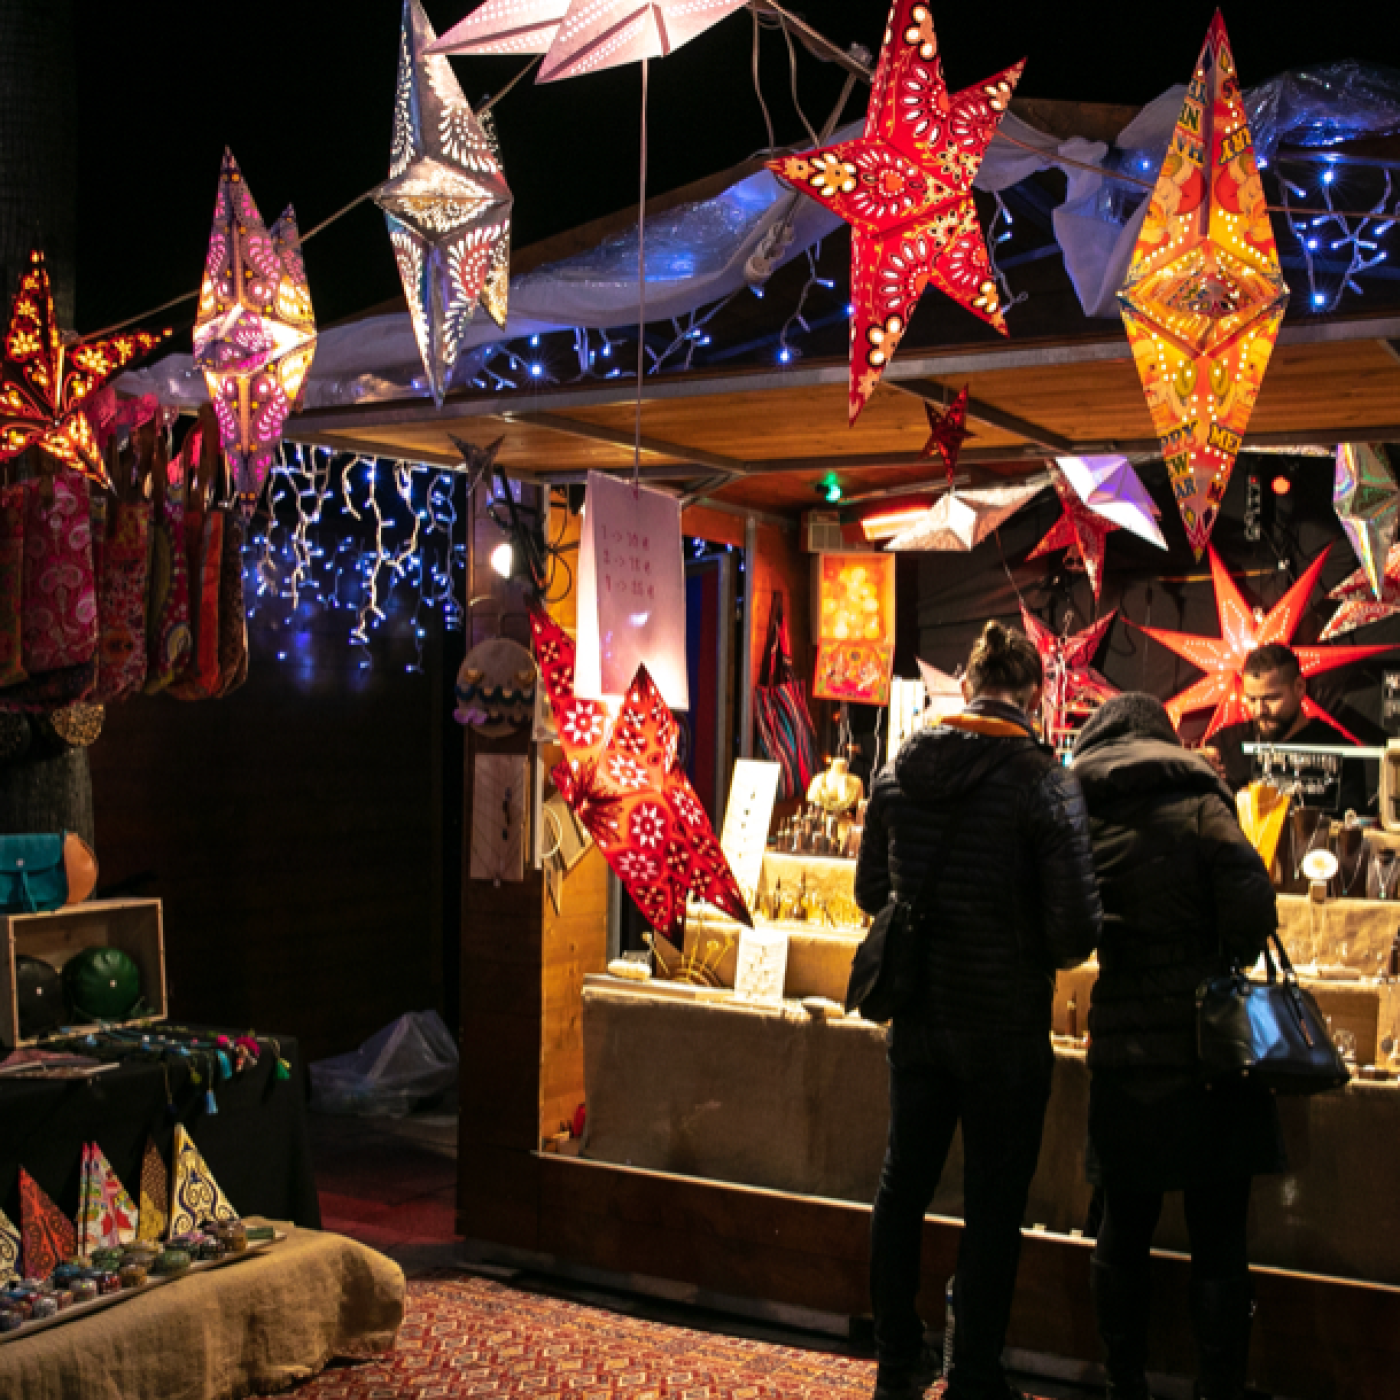 Visiteurs marché de Noël Menton